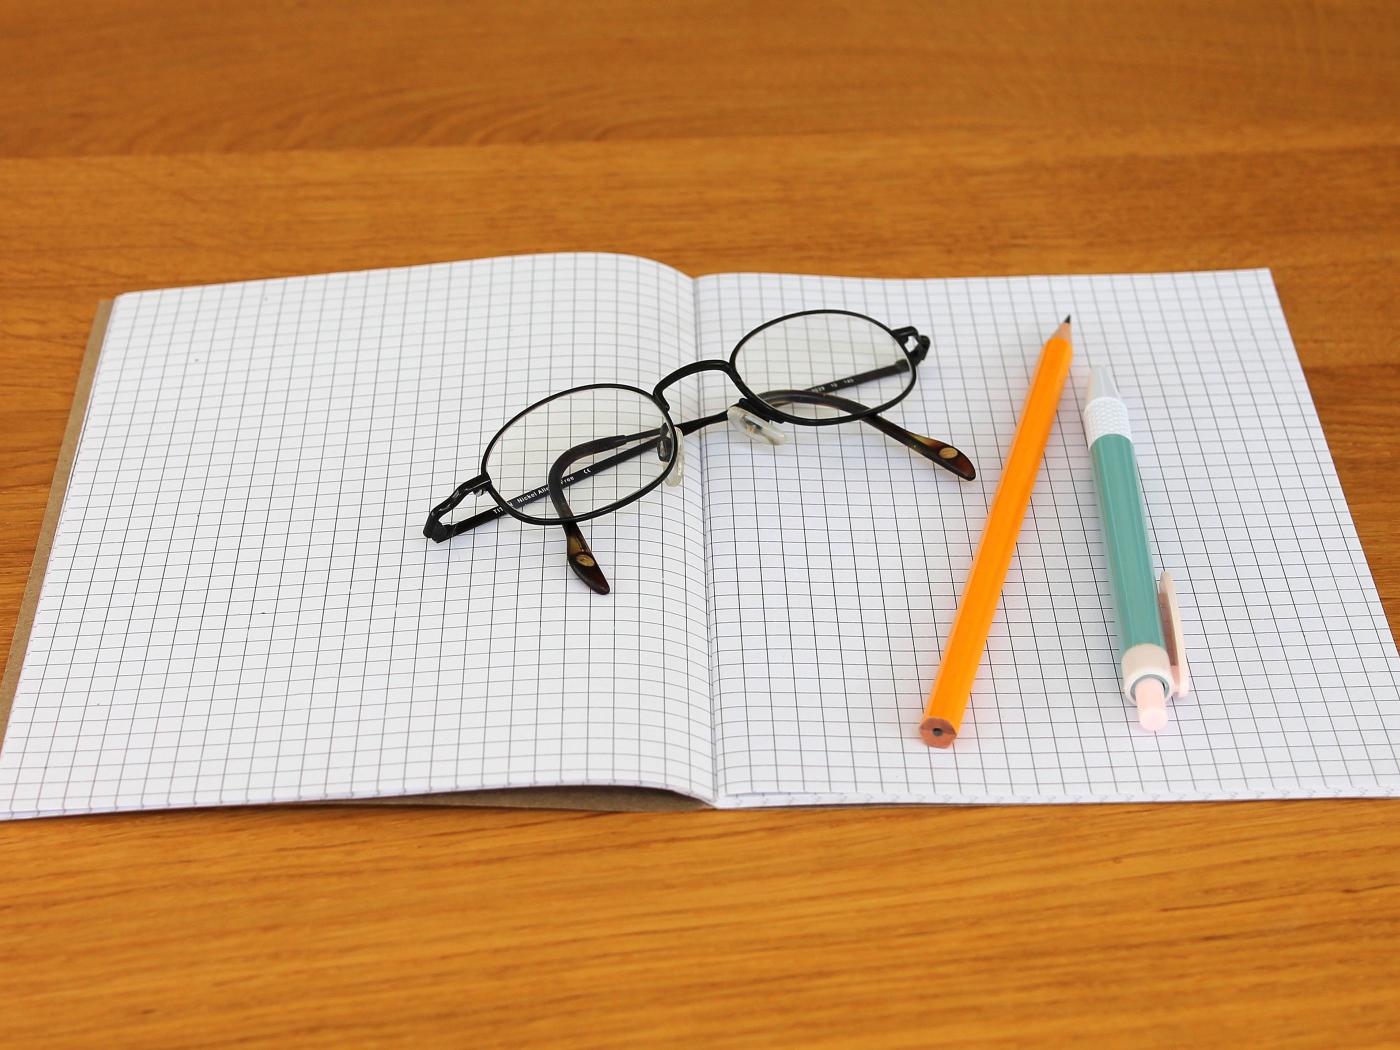 Тетрадь, ручка, карандаш и очки лежат на парте